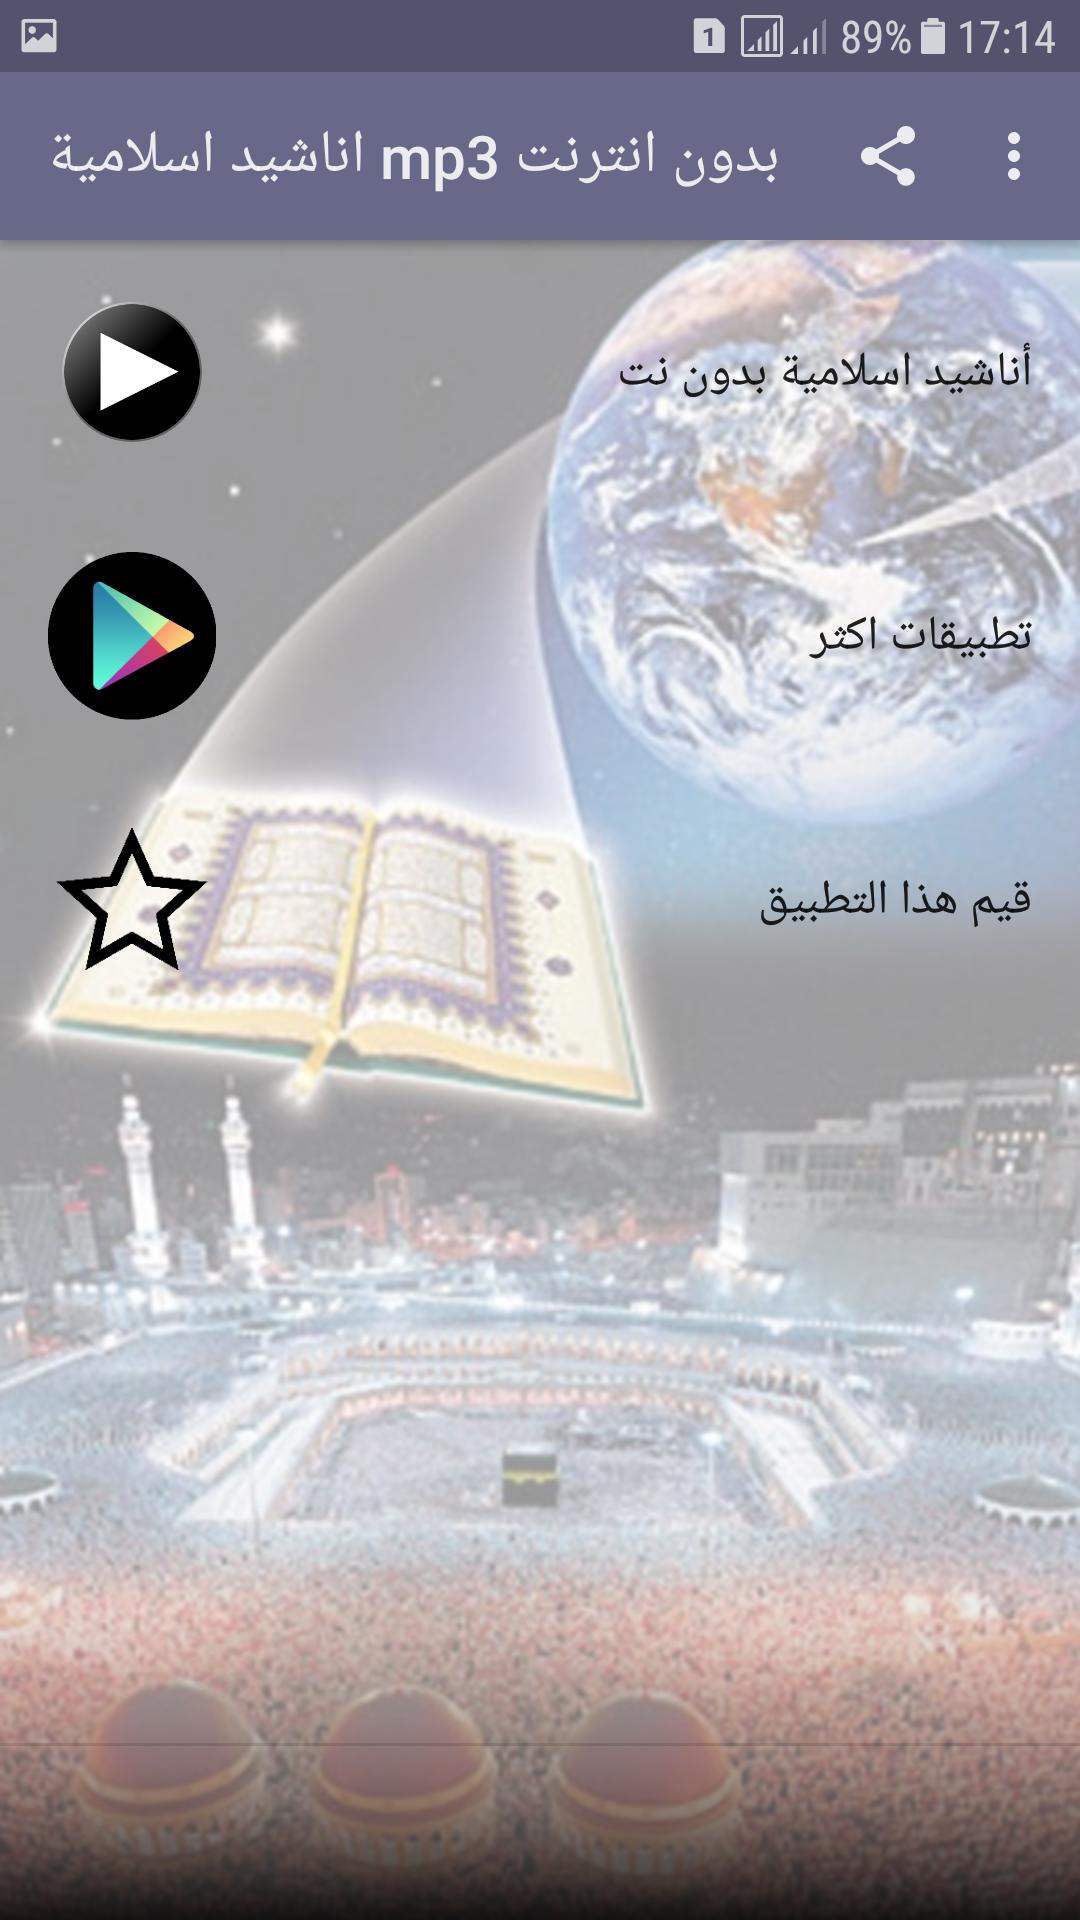 اناشيد اسلامية Mp3 بدون انترنت بجودة ممتازة For Android Apk